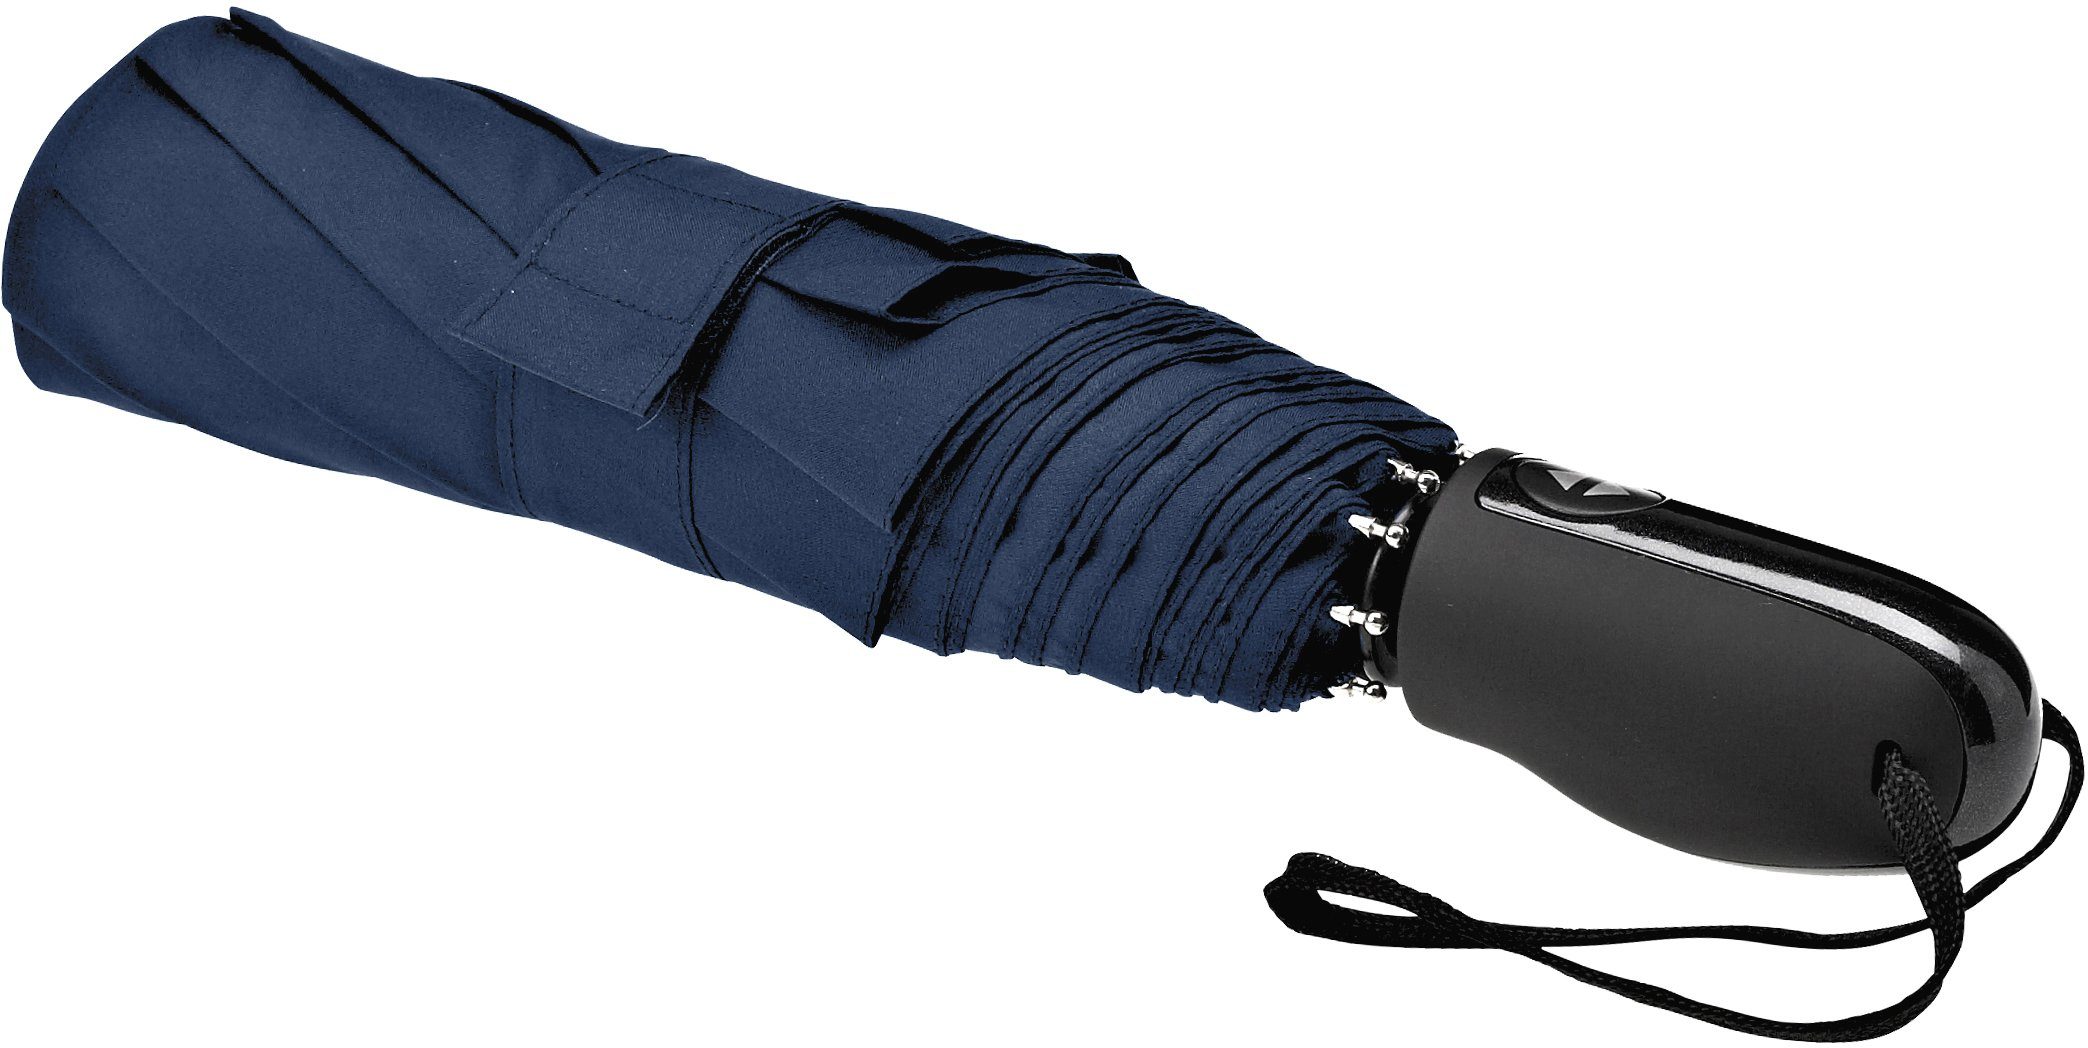 Taschenregenschirm Automatik 32S7, EuroSCHIRM® marineblau